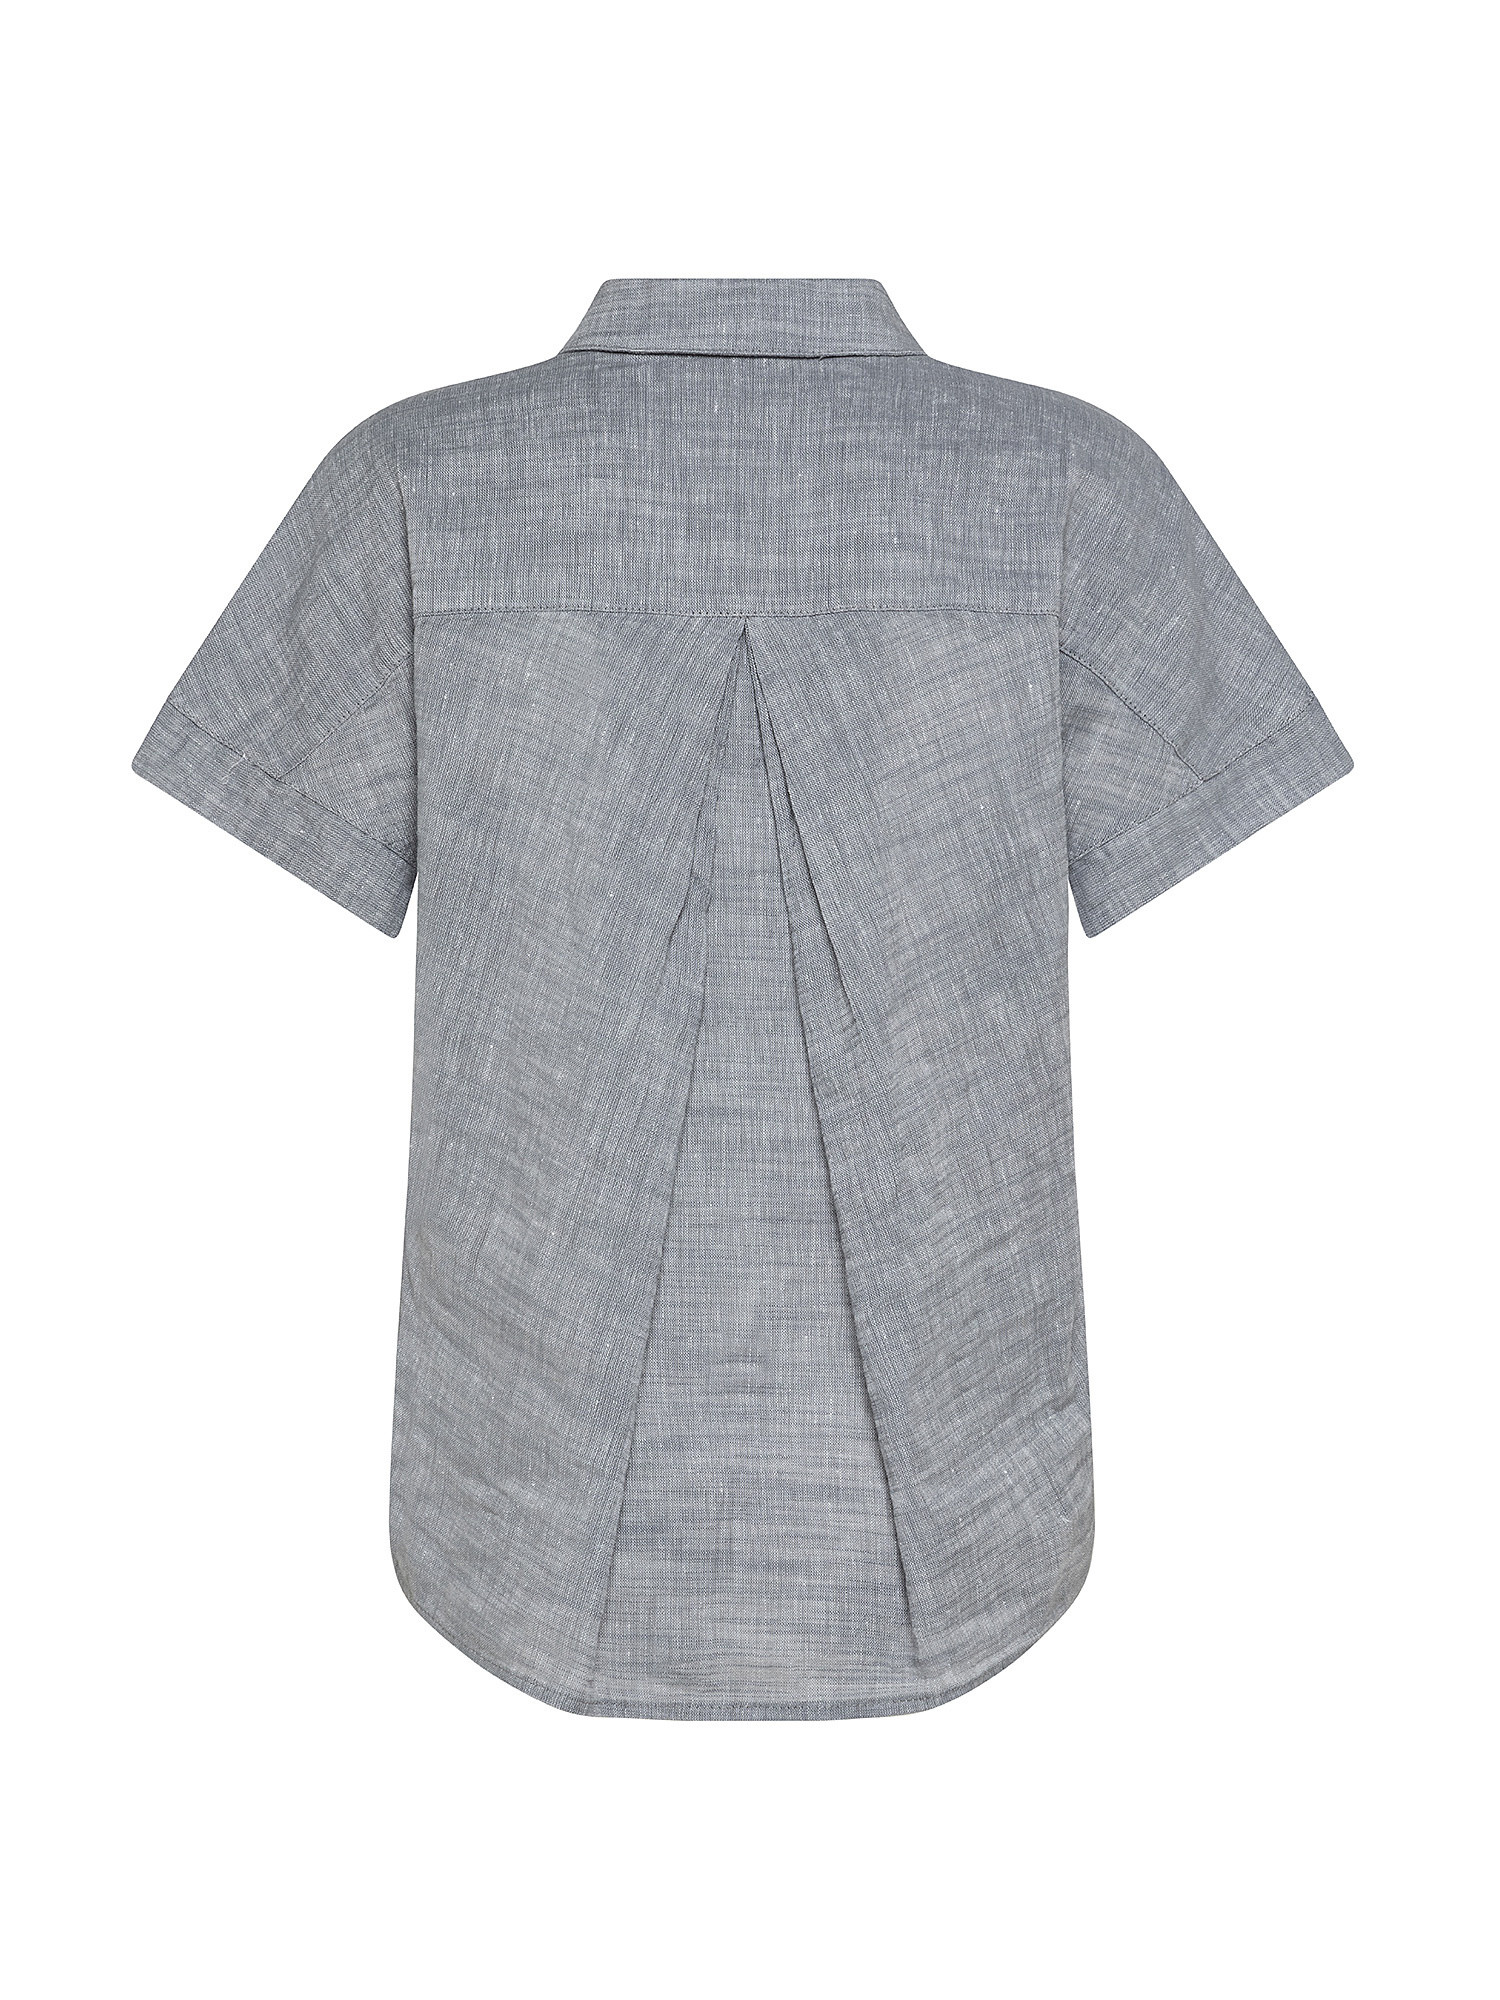 Shirt SL in linen blend, Light Grey, large image number 1